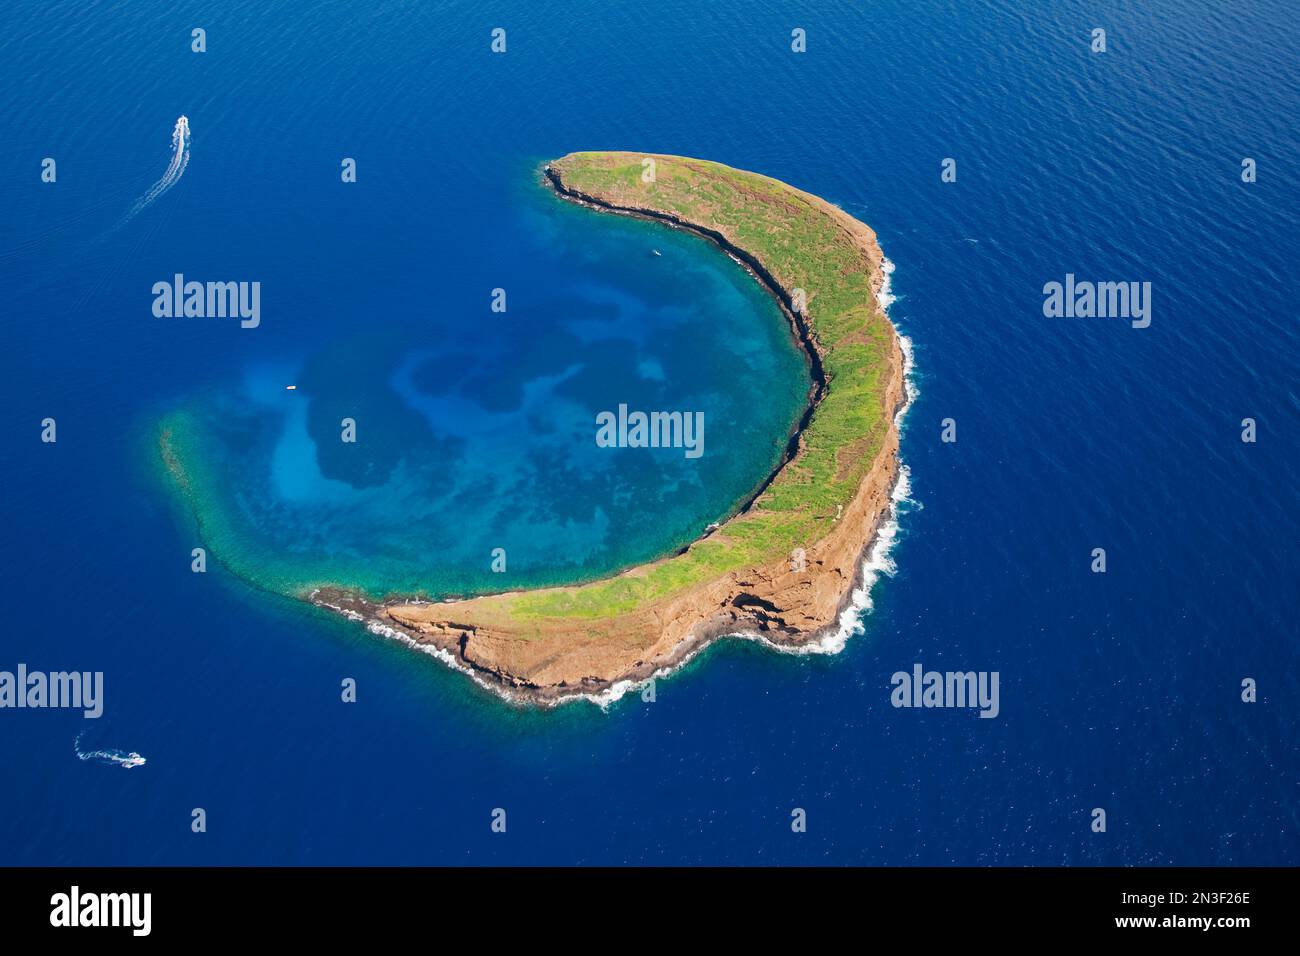 Veduta aerea del cratere Molokini e dell'isolotto, famoso luogo per lo snorkeling al largo della costa di Maui. Molokini è una riserva marina protetta dallo Stato di... Foto Stock